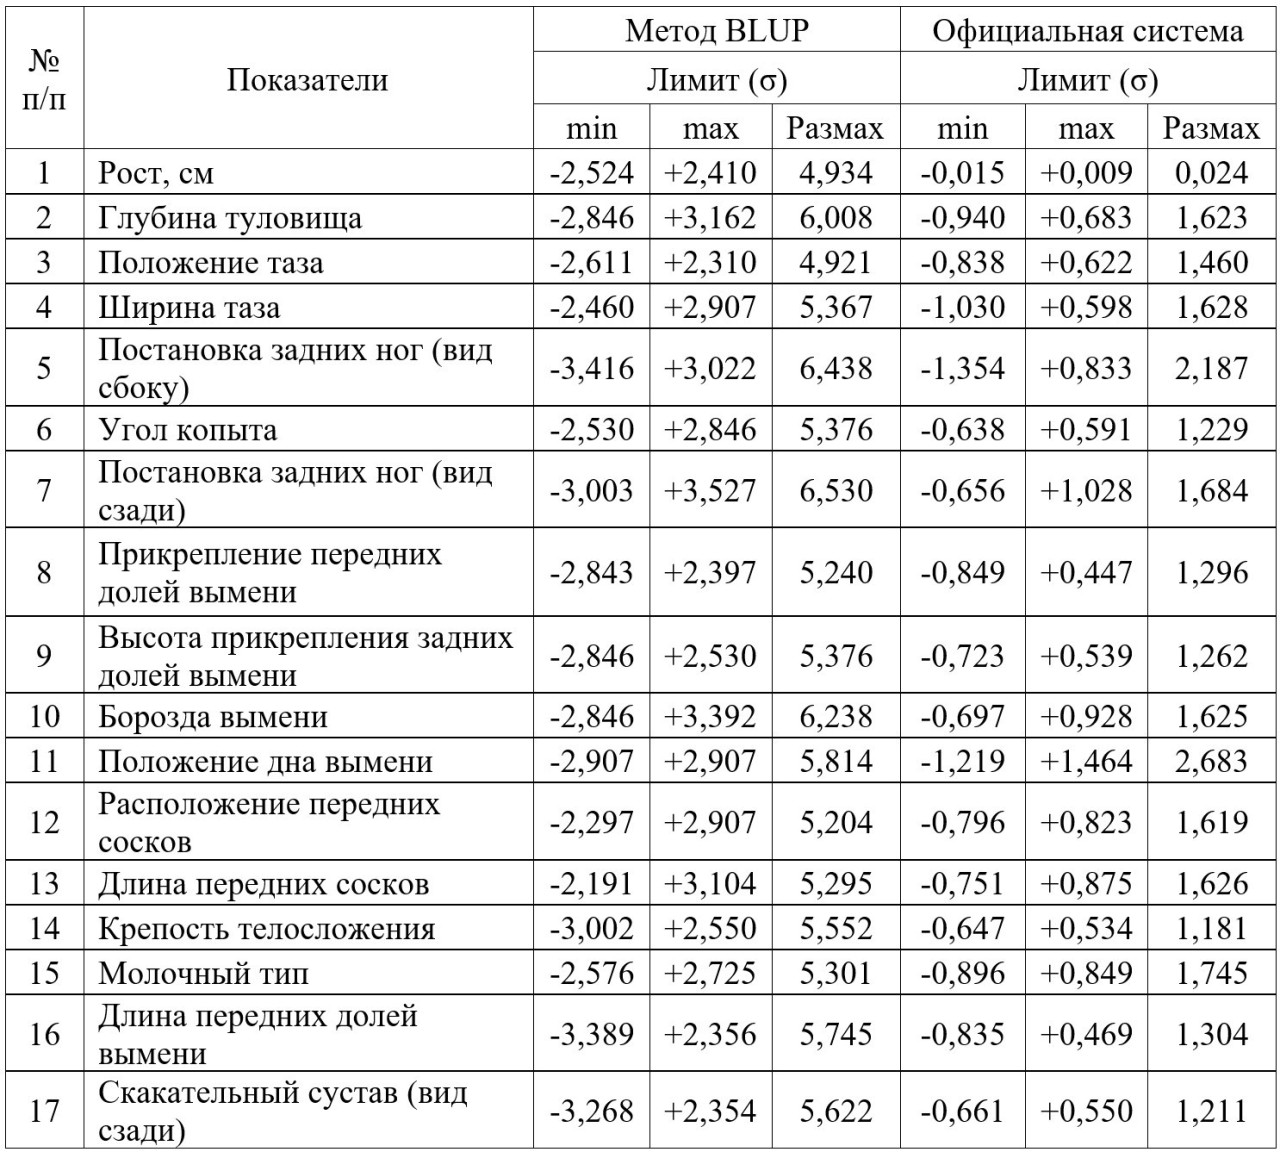 Таблица 2 –
Сравнительная характеристика результатов линейной оценки быков по типу
телосложения дочерей на основе метода BLUP и официальной системой оценки